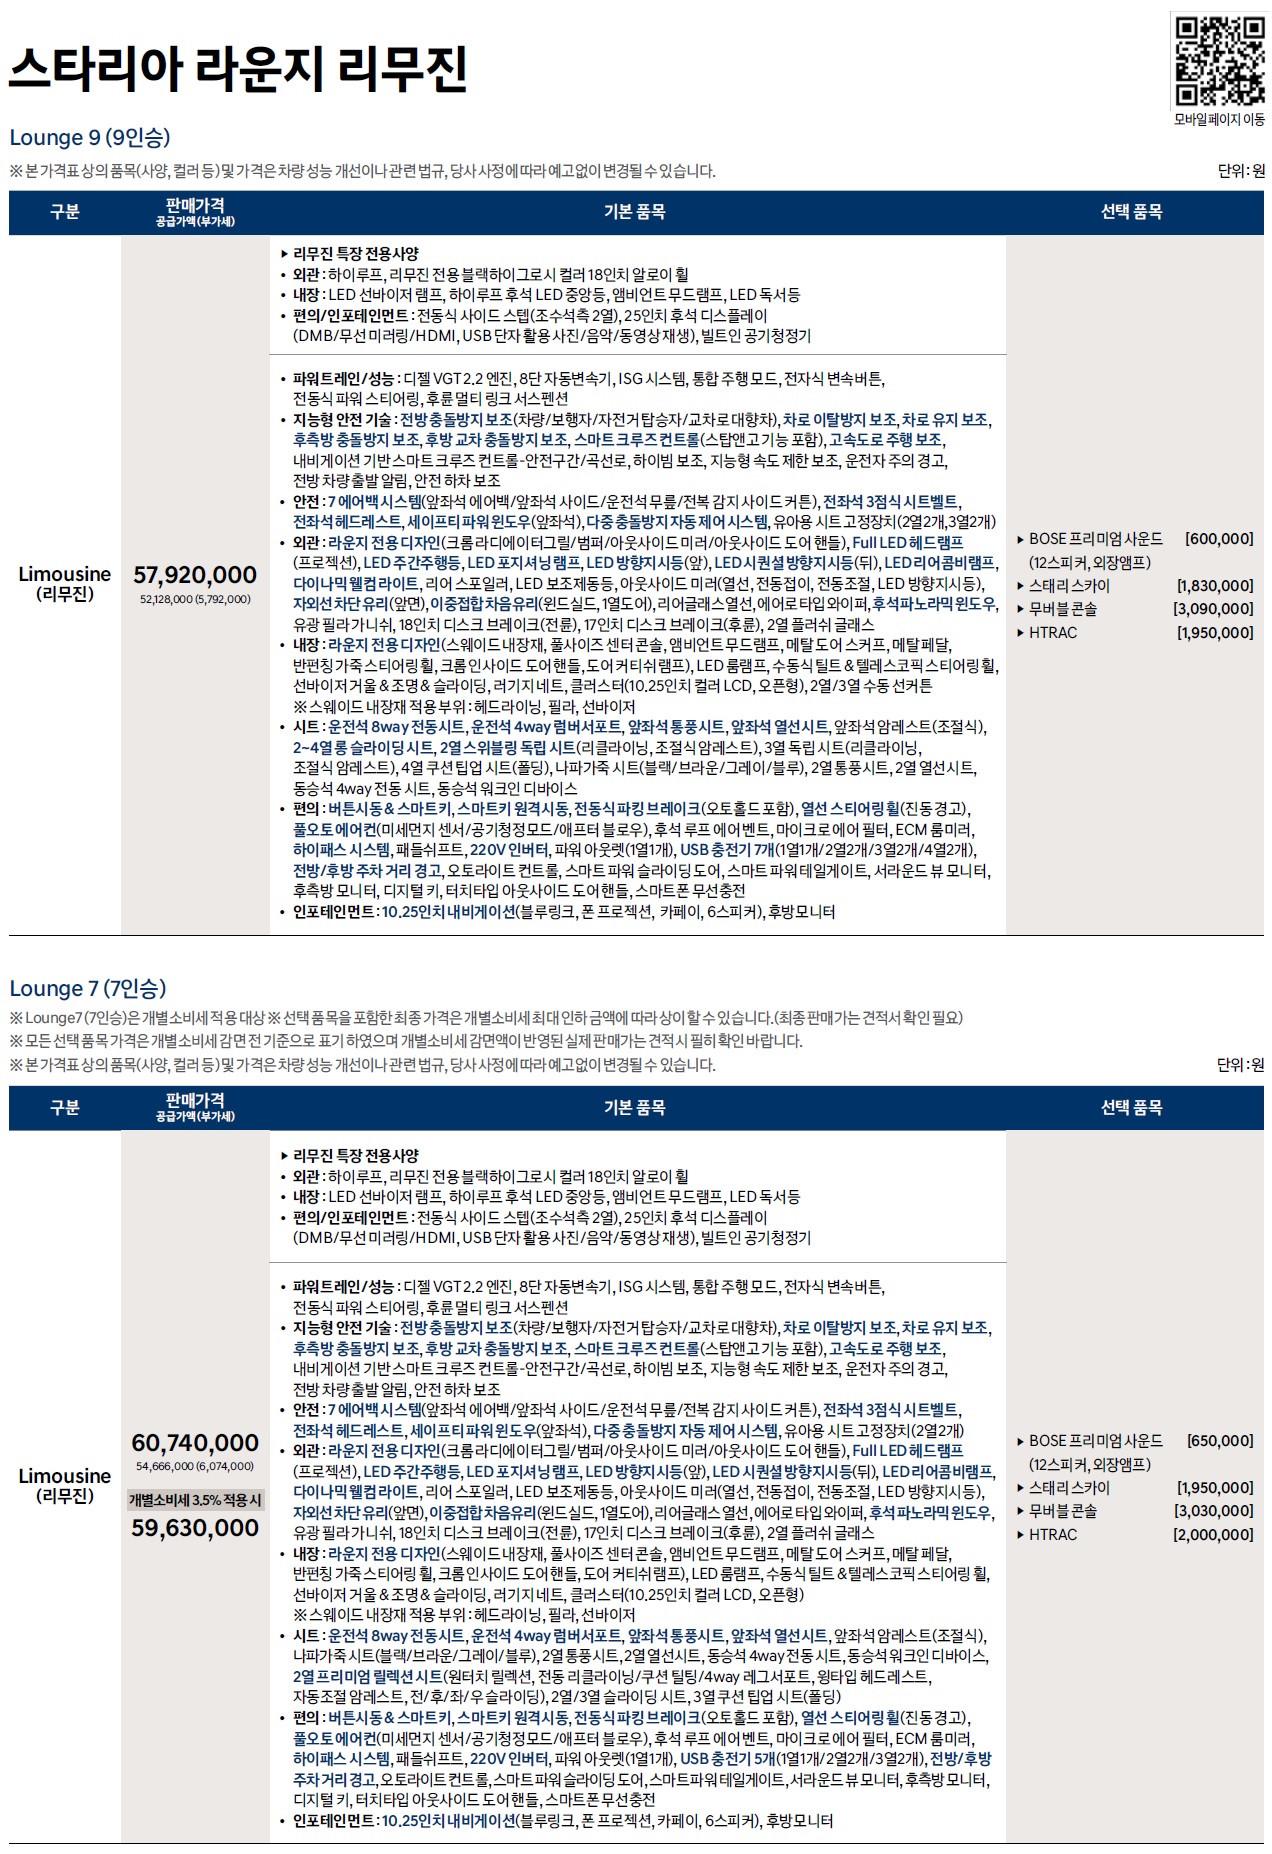 스타리아 라운지 리무진 가격표 - 2022년 08월 -1.jpg